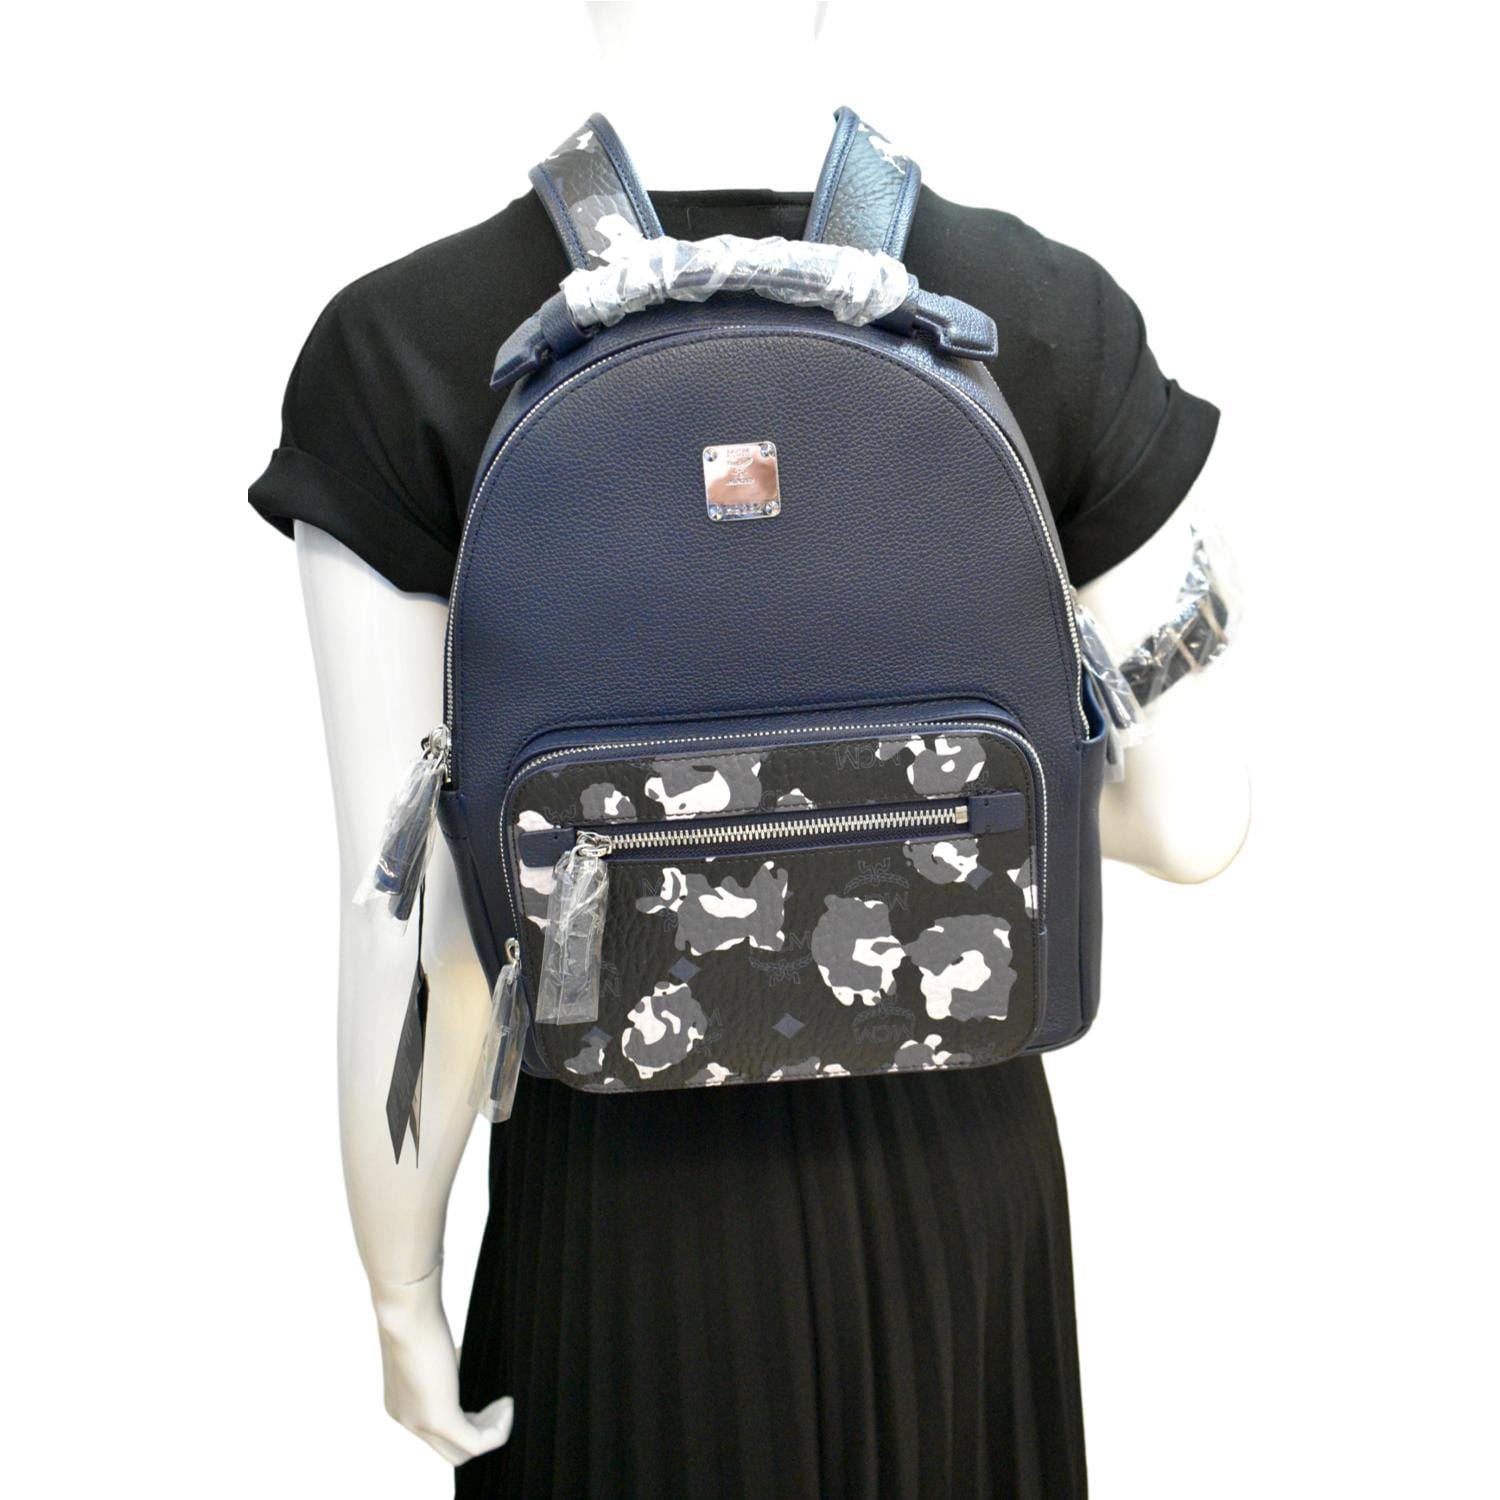 Blue McM BackPack  Mcm backpack, Bags, Mcm bags